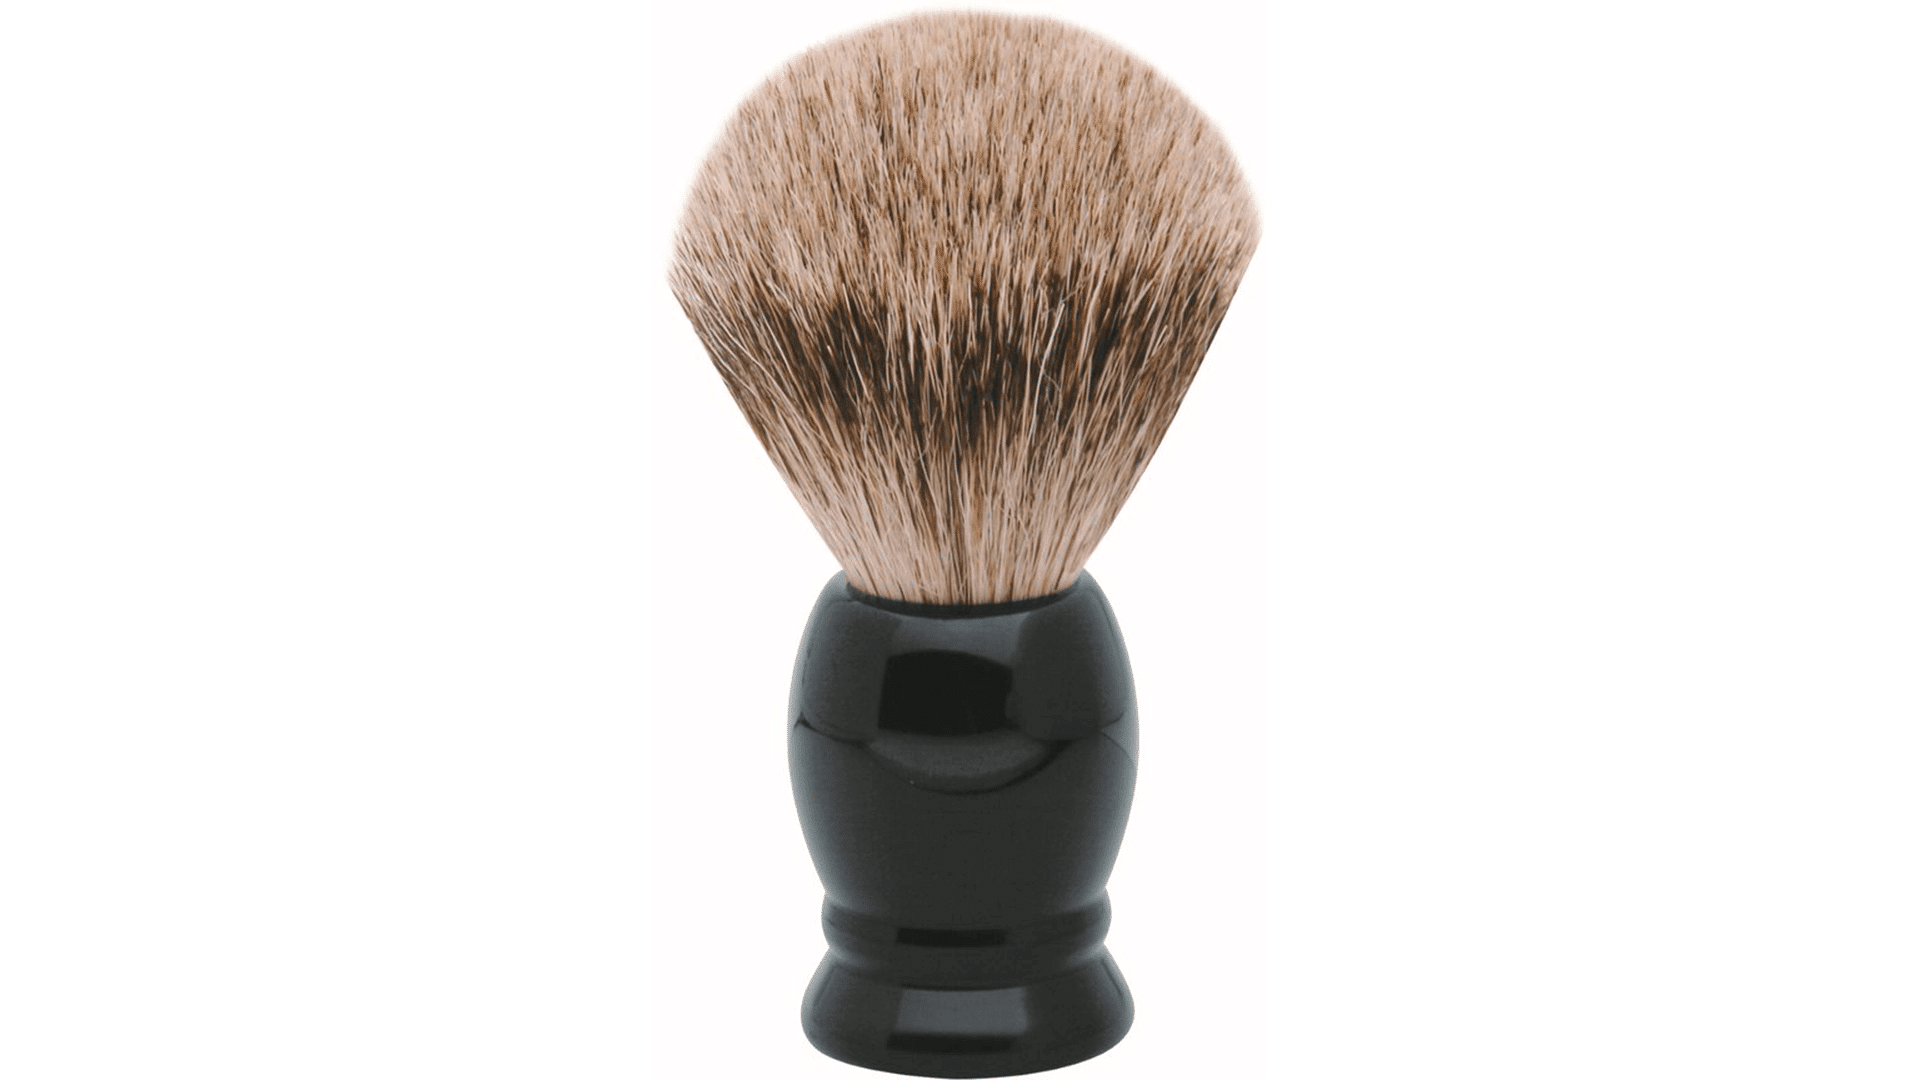 erbe-shaving-brush-badger-hair-precious-resin-black-size-m-from-solingen